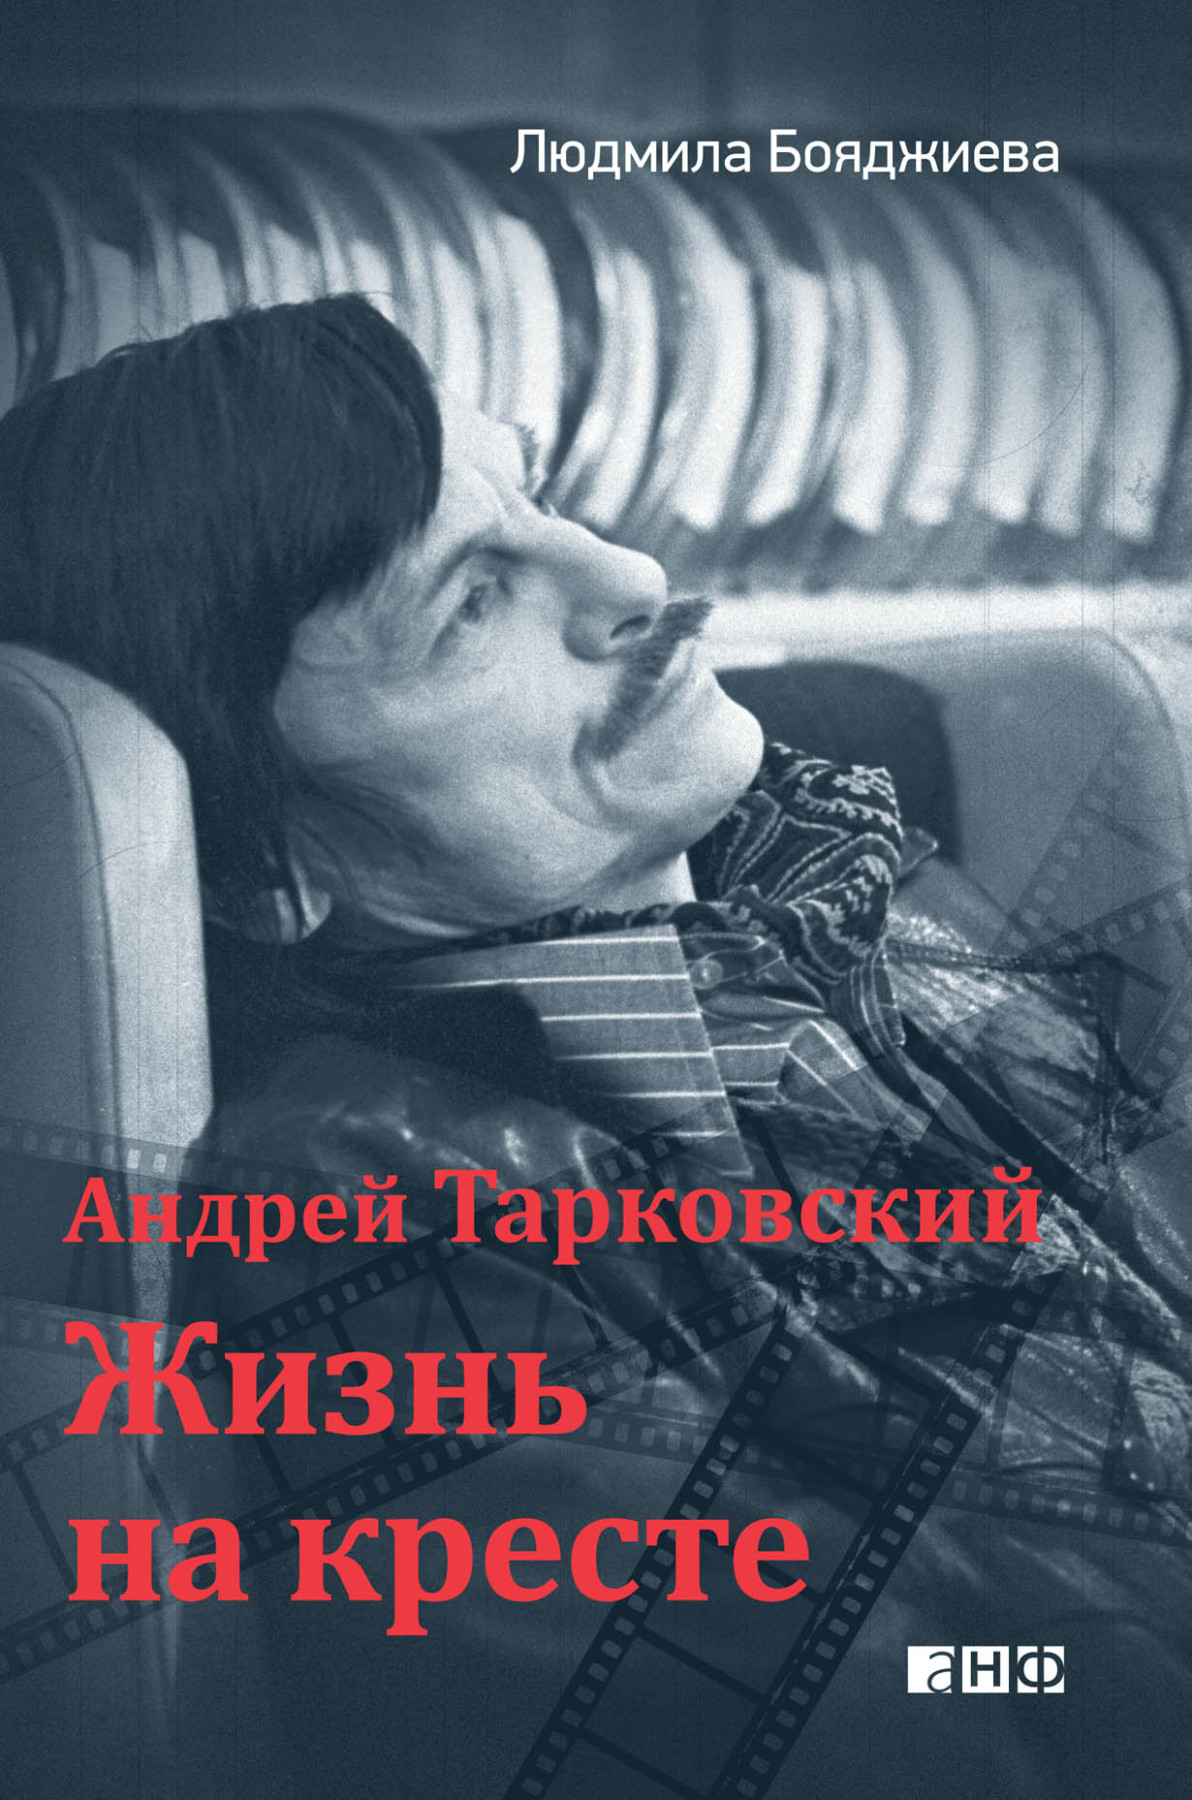 Андрей Тарковский — жизнь на кресте обложка.